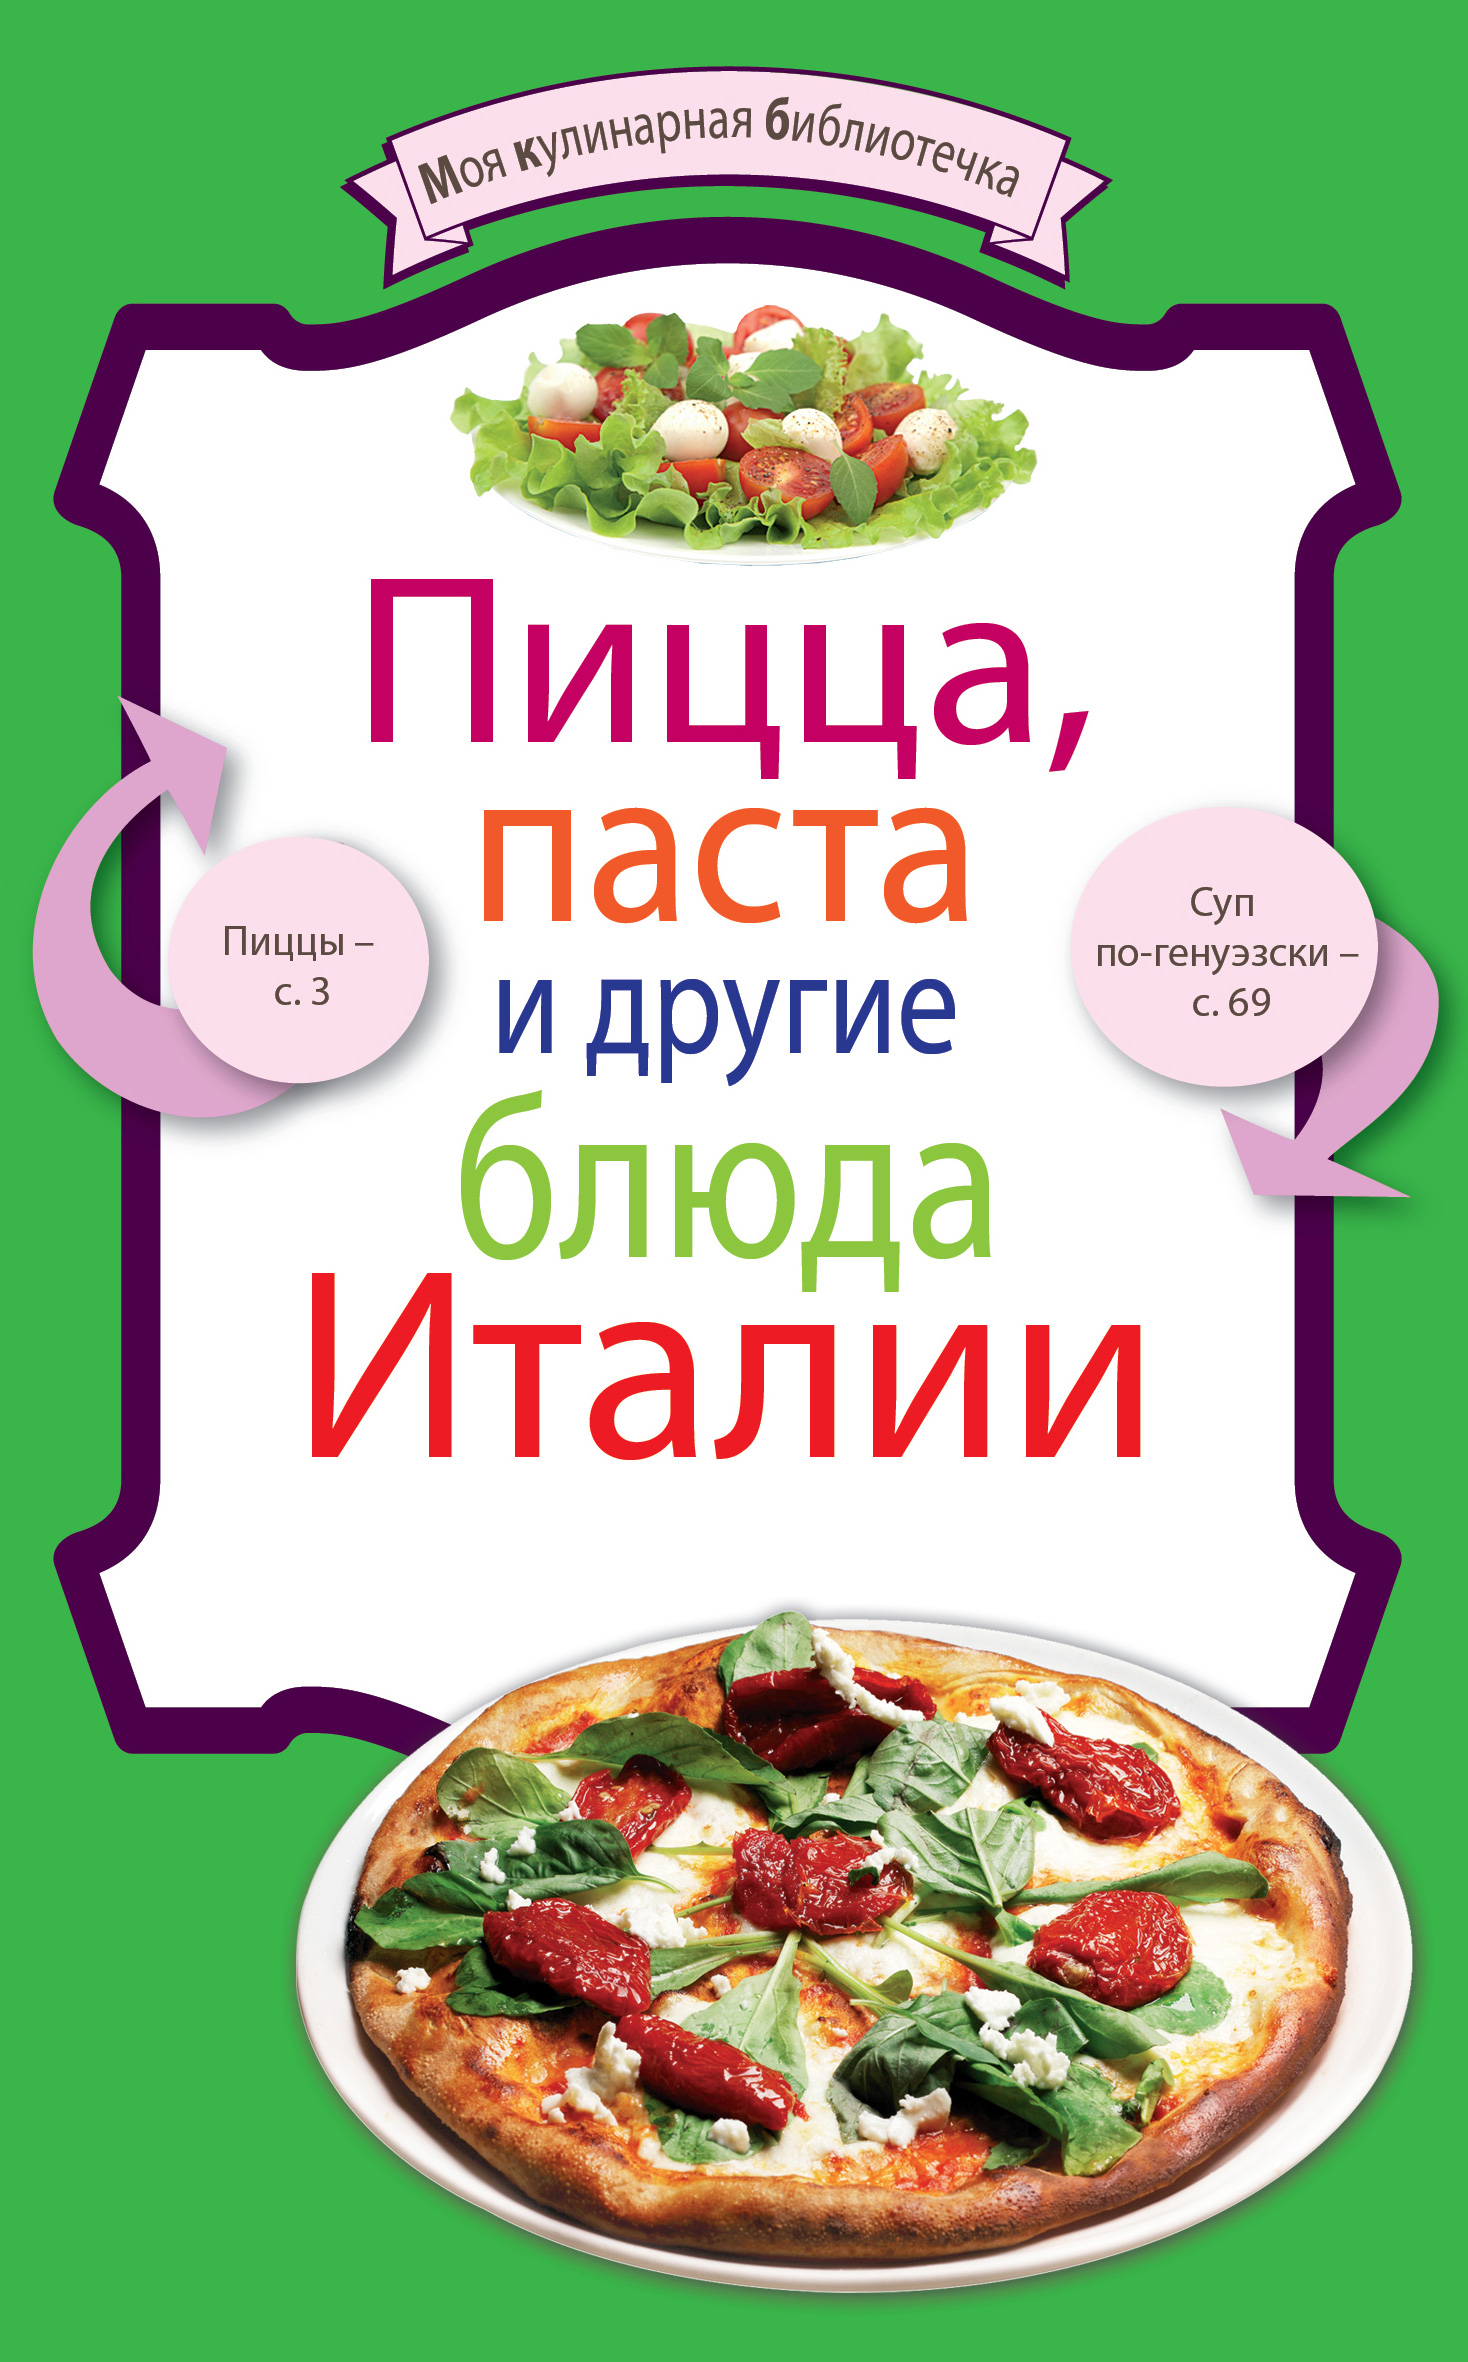 Книга Пицца, паста и другие блюда Италии из серии Пицца, паста и другие блюда Италии, созданная , может относится к жанру Кулинария. Стоимость электронной книги Пицца, паста и другие блюда Италии с идентификатором 651065 составляет 14.99 руб.